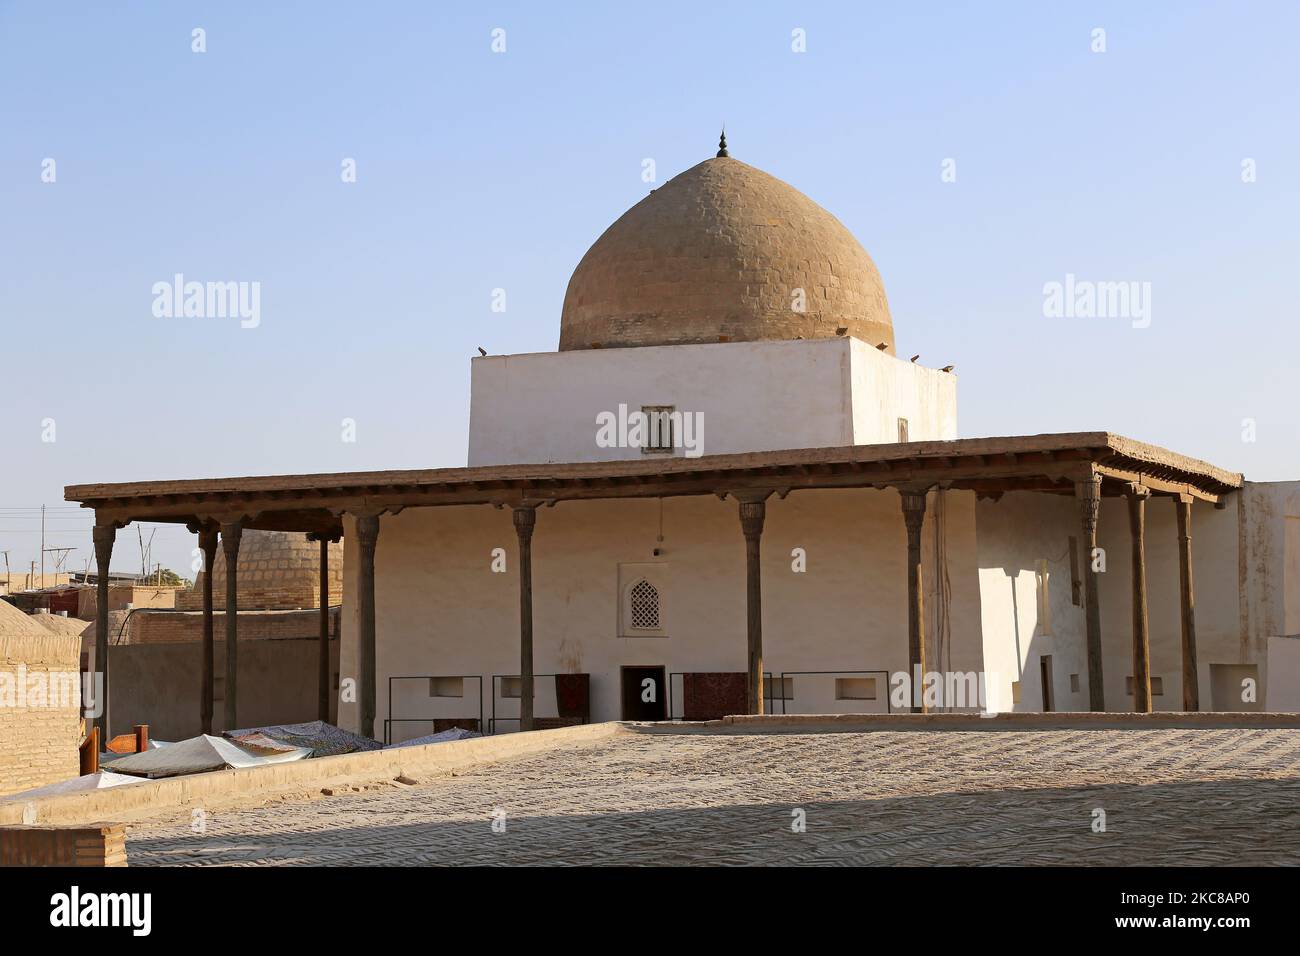 Mosquée AK, rue Polvon Kori, Ichan Kala (forteresse intérieure), Khiva, province de Khorezm, Ouzbékistan, Asie centrale Banque D'Images